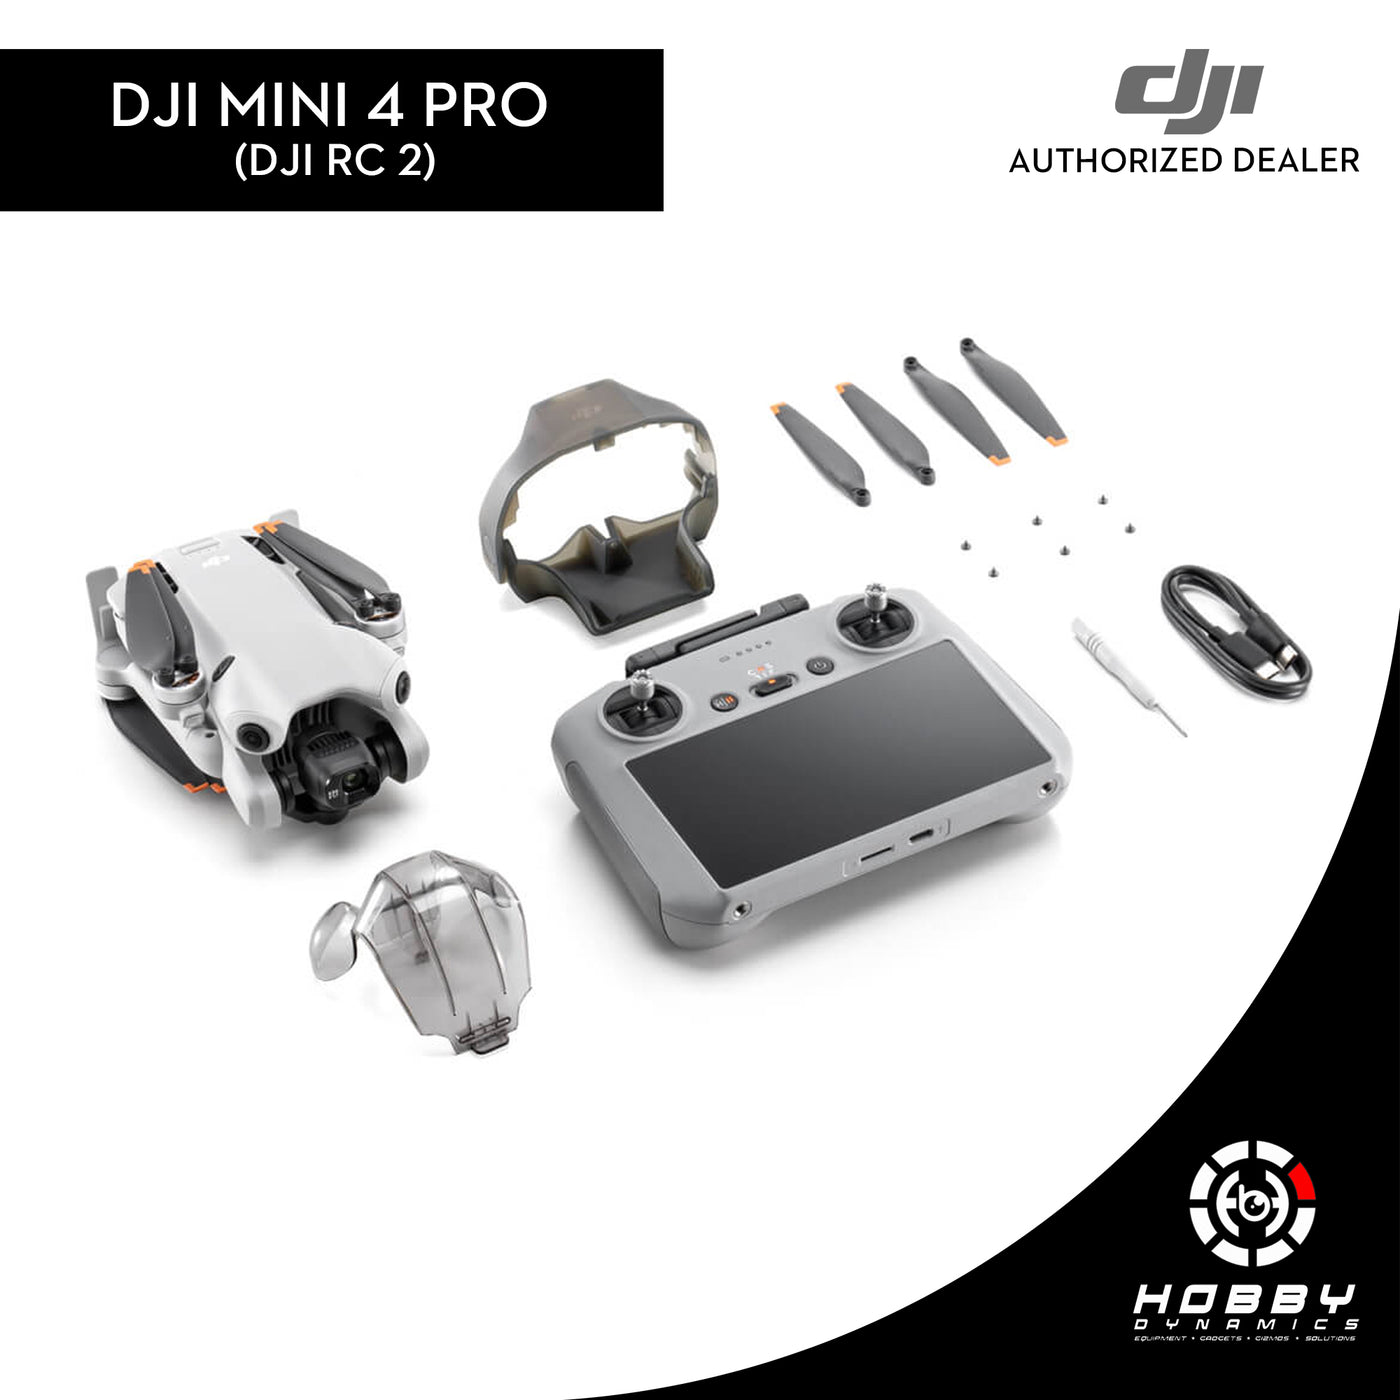 DJI Mini 4 Pro (DJI RC2) with FREE Sandisk Extreme 64GB SD Card